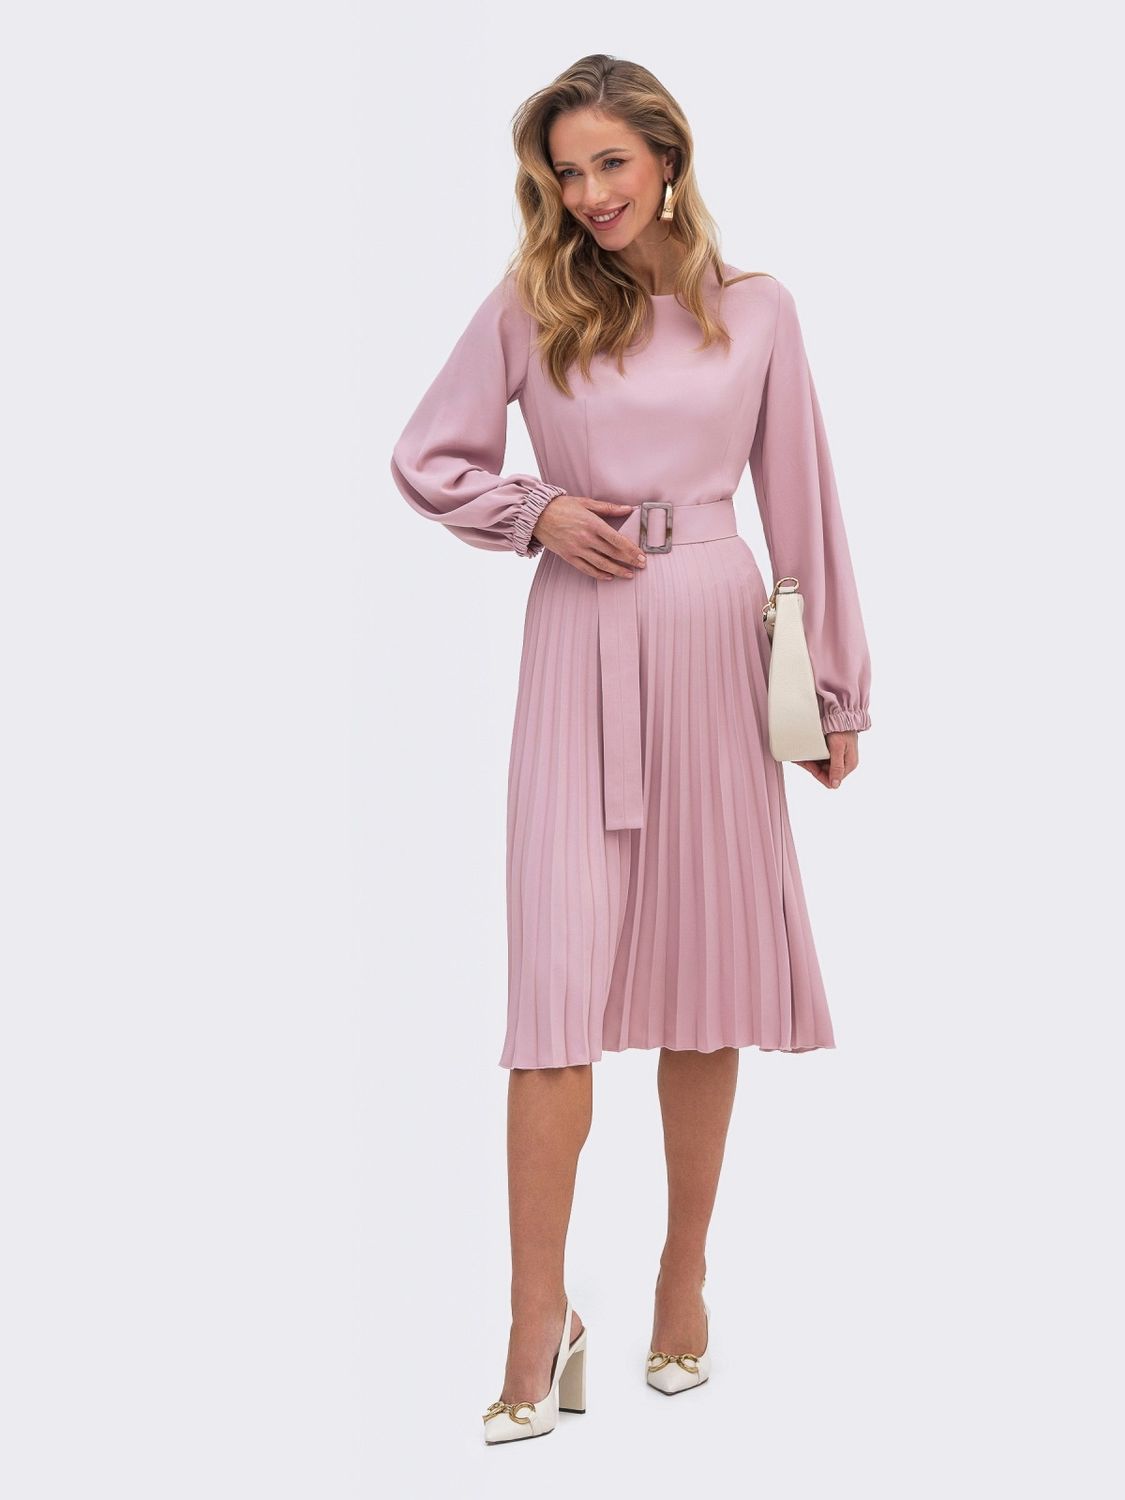 Сукня-міді зі спідницею-плісе рожевого кольору - фото